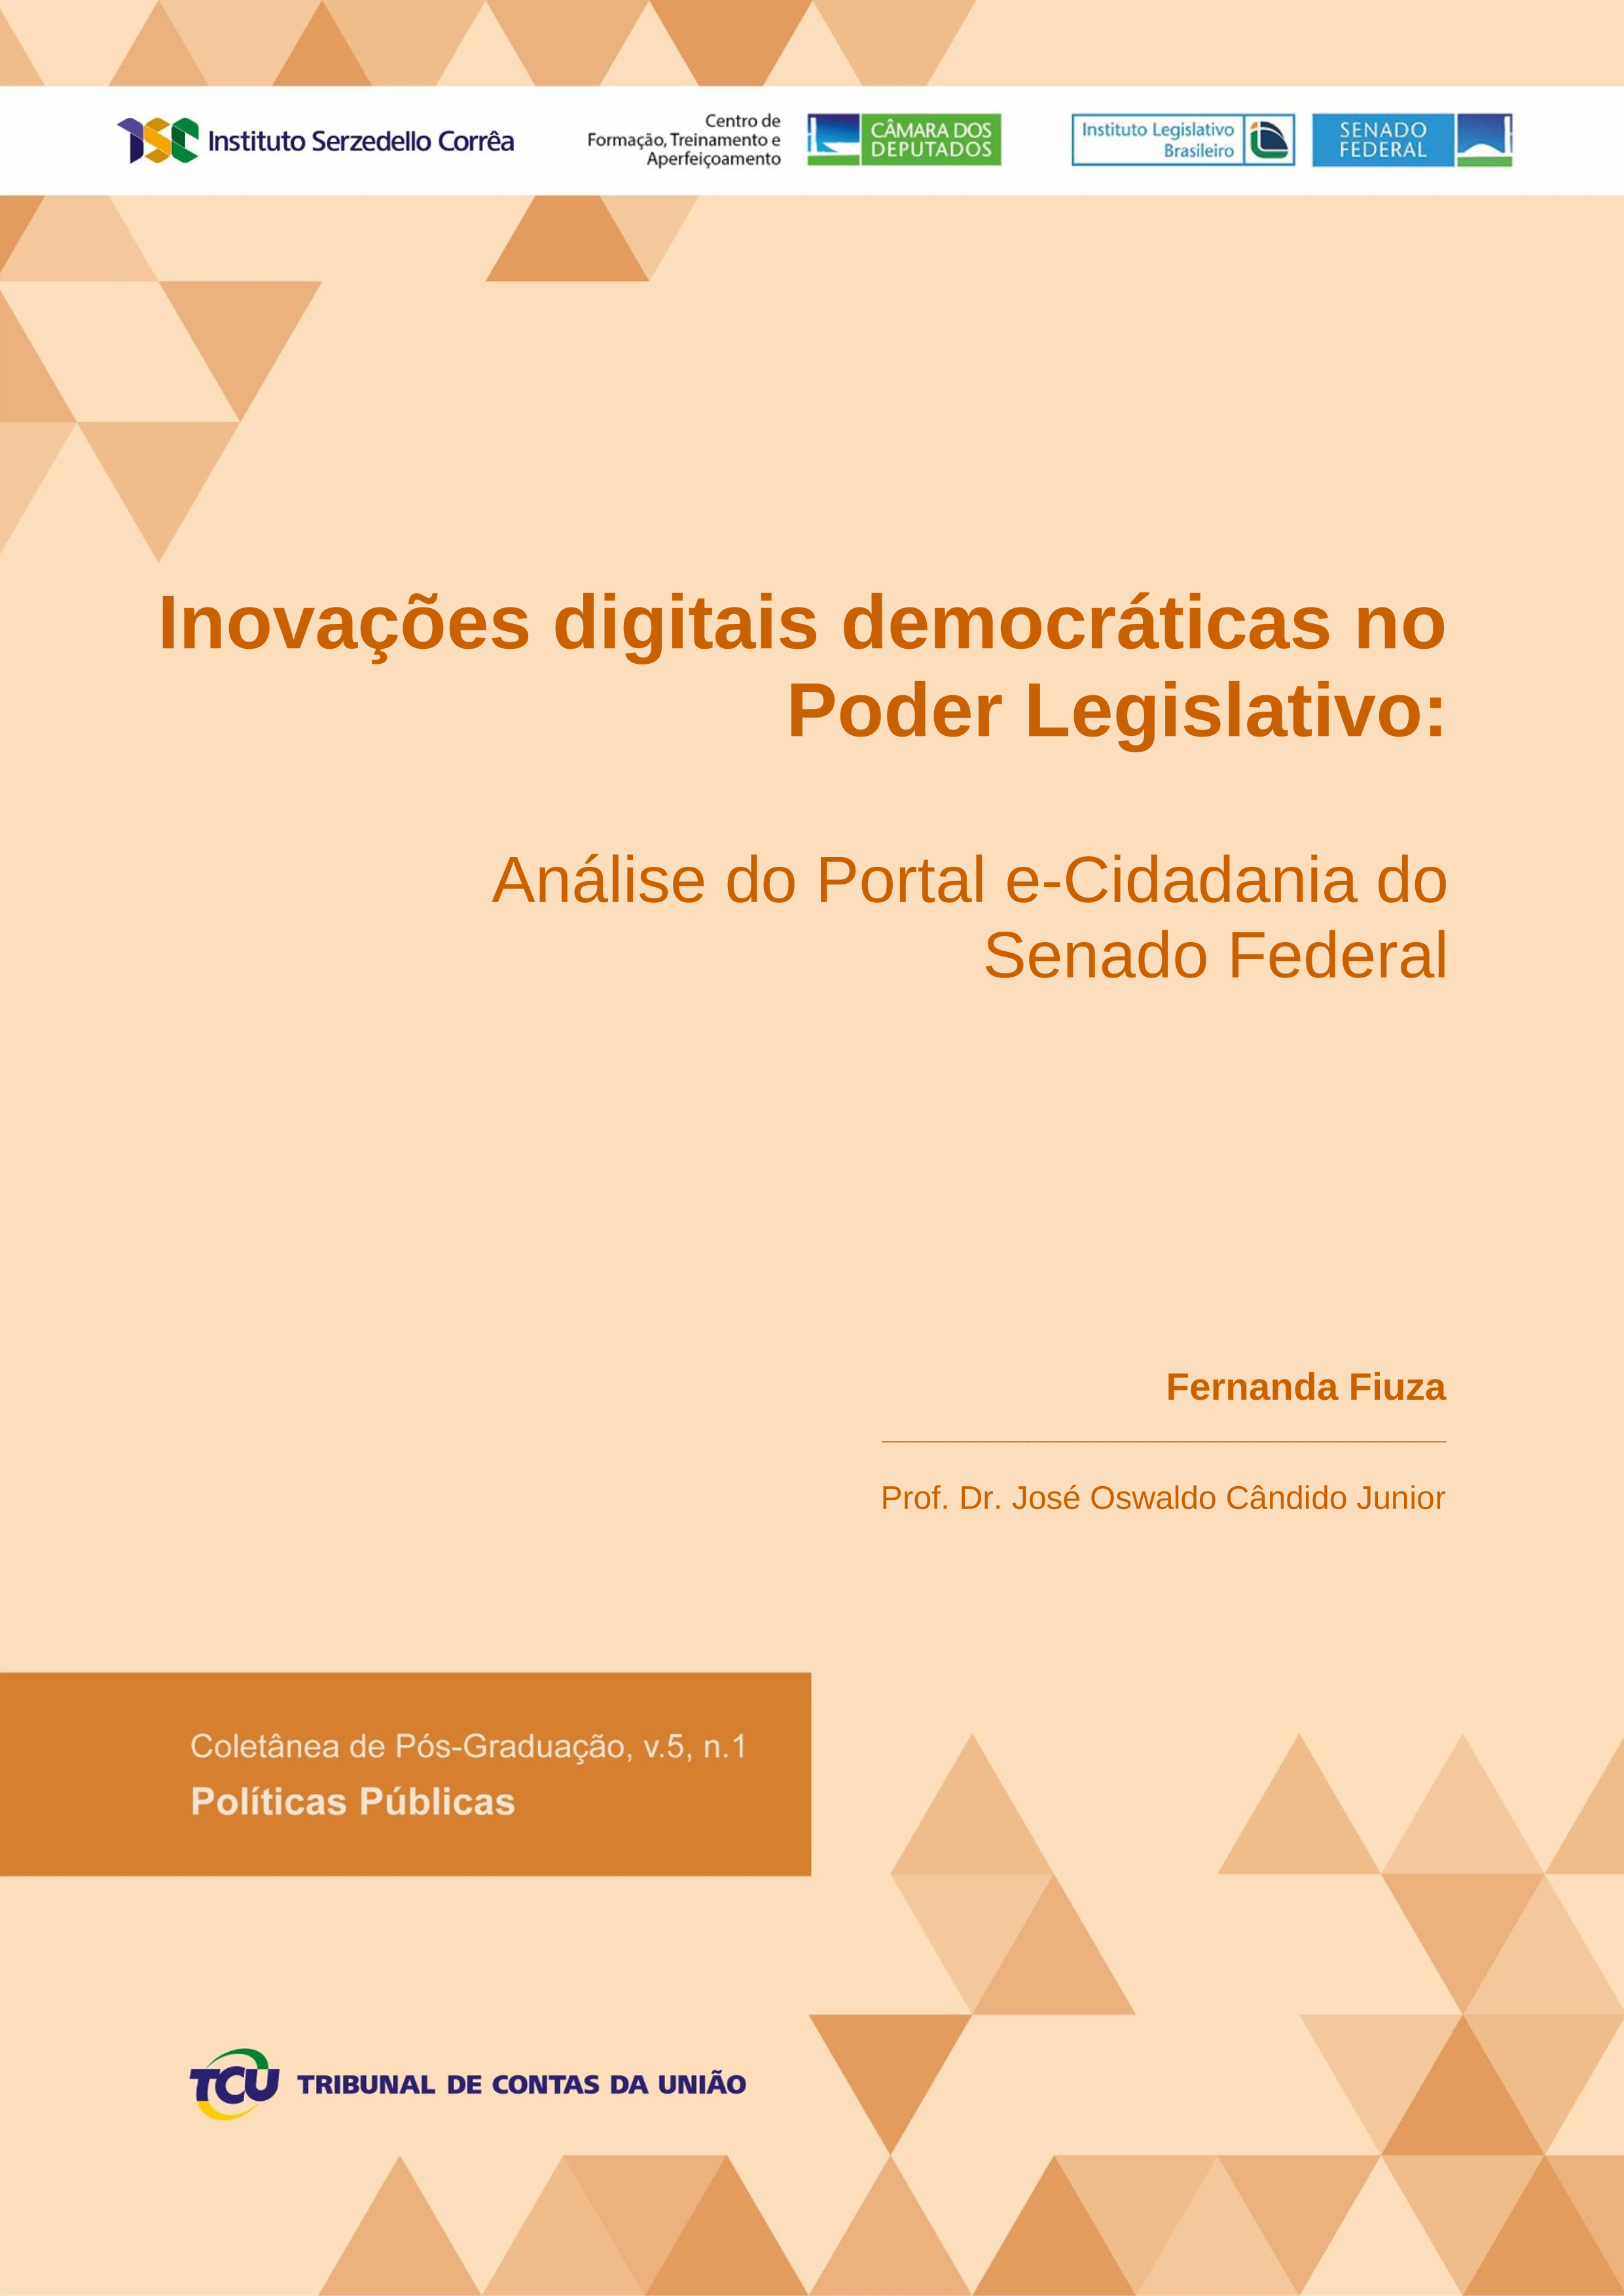 fiuza_ f. inovacoes digitais democraticas no poder legislativo.png